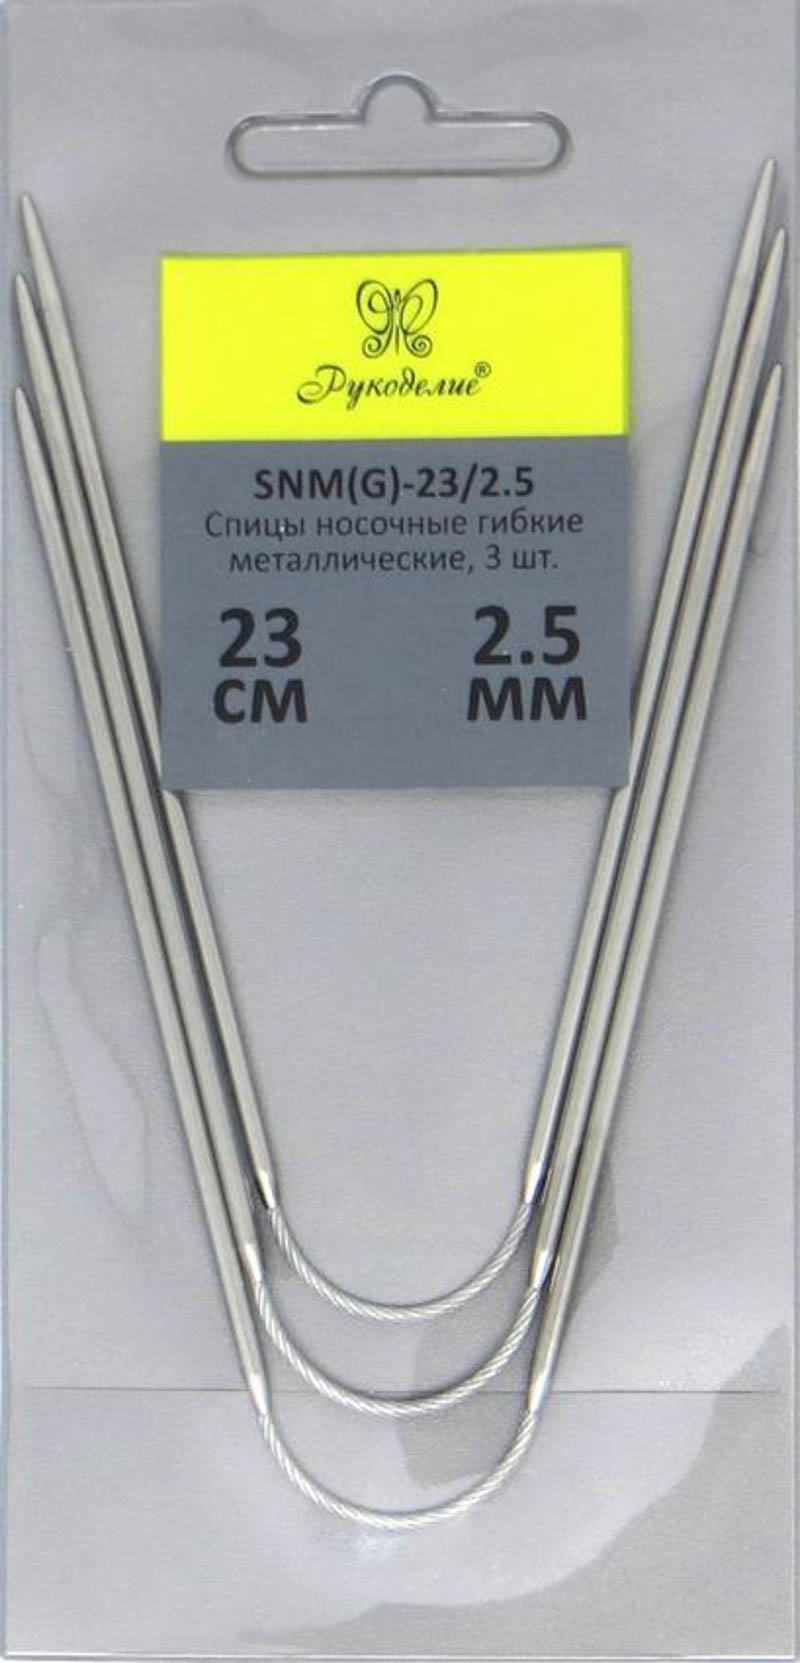 Спицы "Рукоделие" SNM(G)-23/2.5 носочные гибкие металл 2,5мм, 23см (3шт.) на металлическом тросике